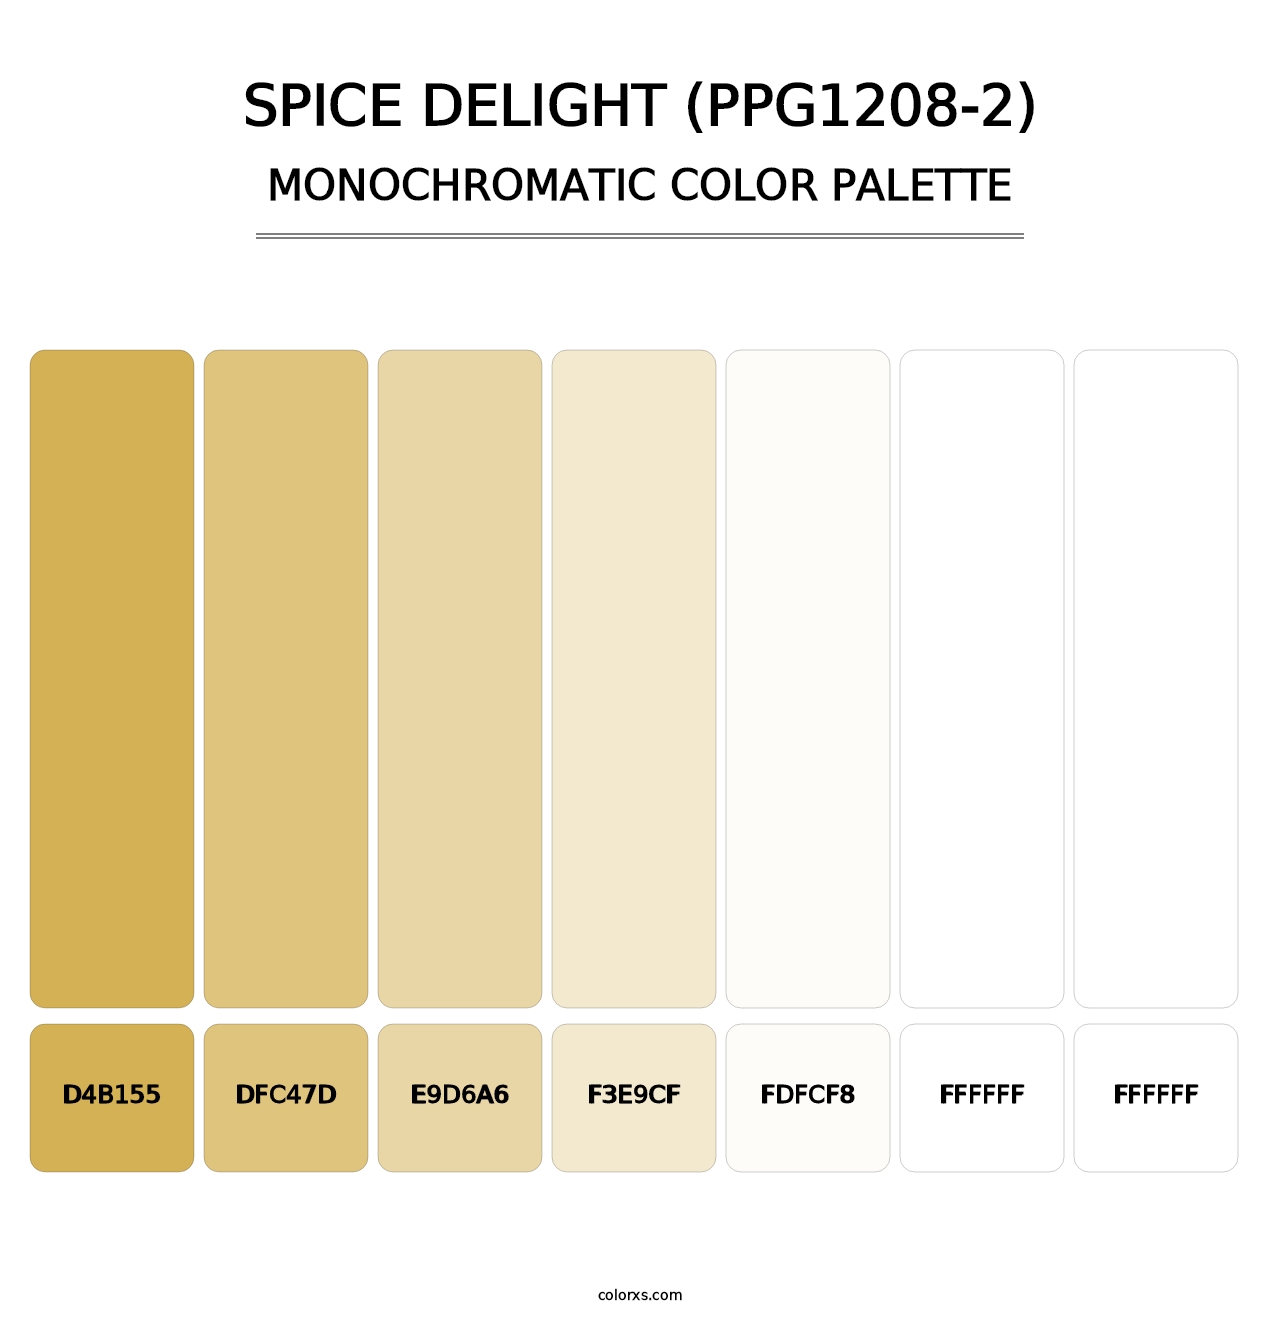 Spice Delight (PPG1208-2) - Monochromatic Color Palette